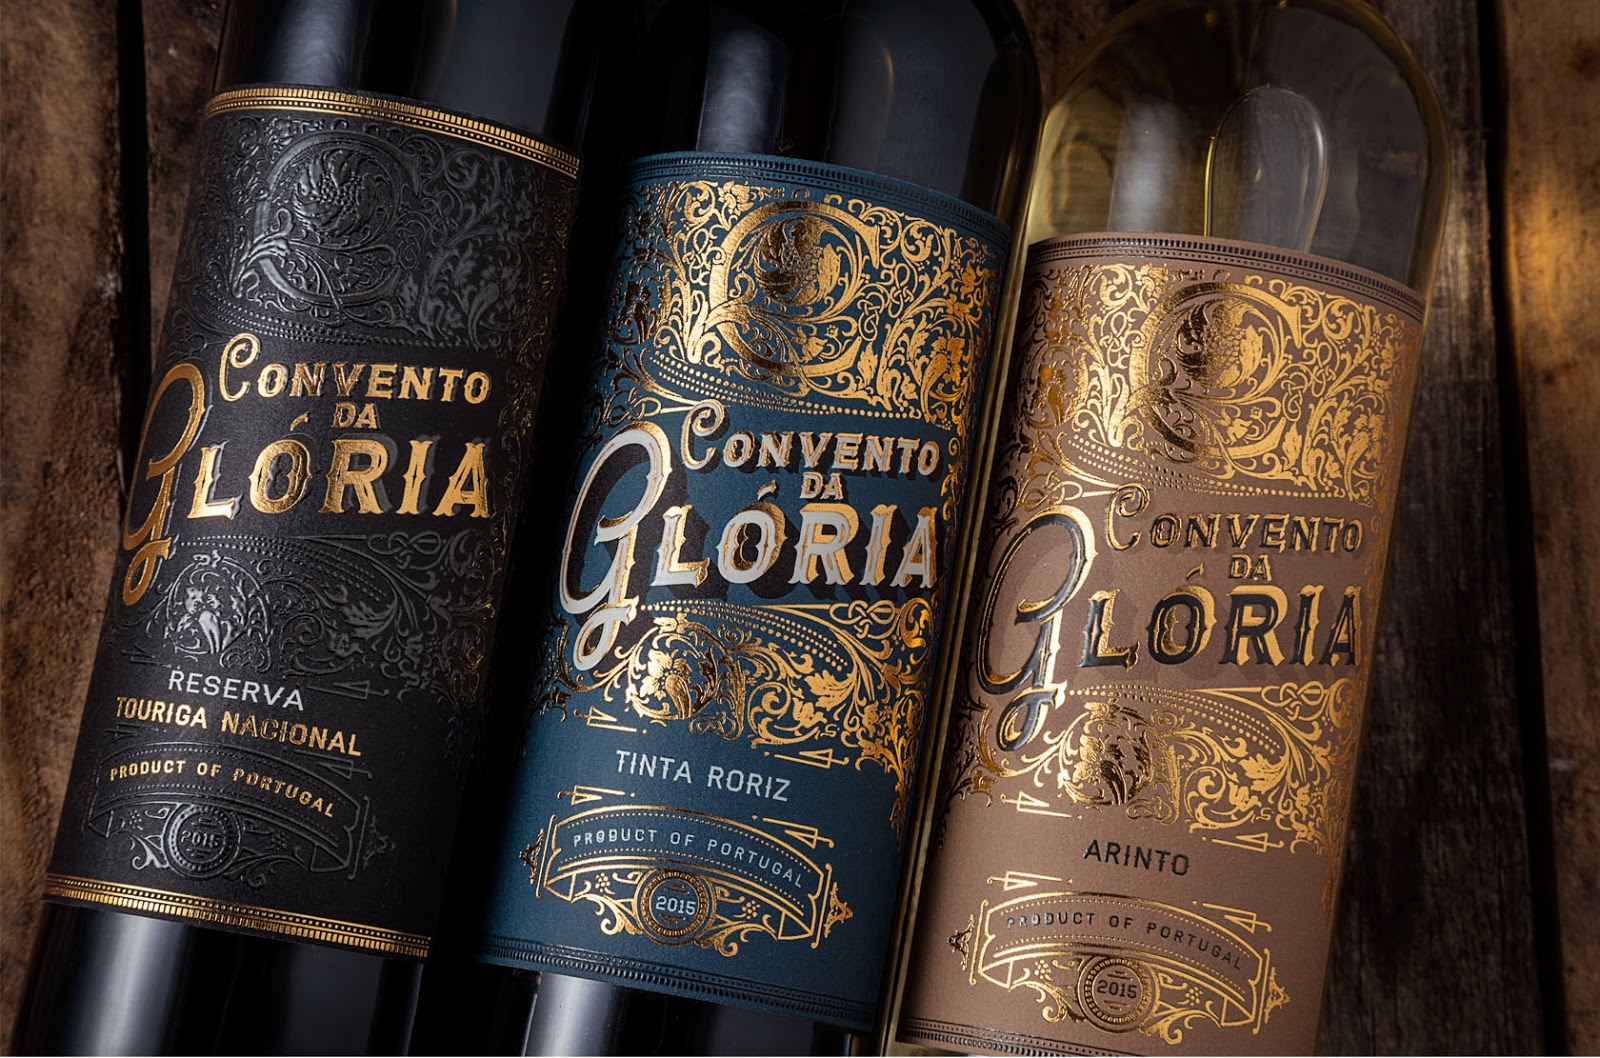 Convento da Gloria wine label